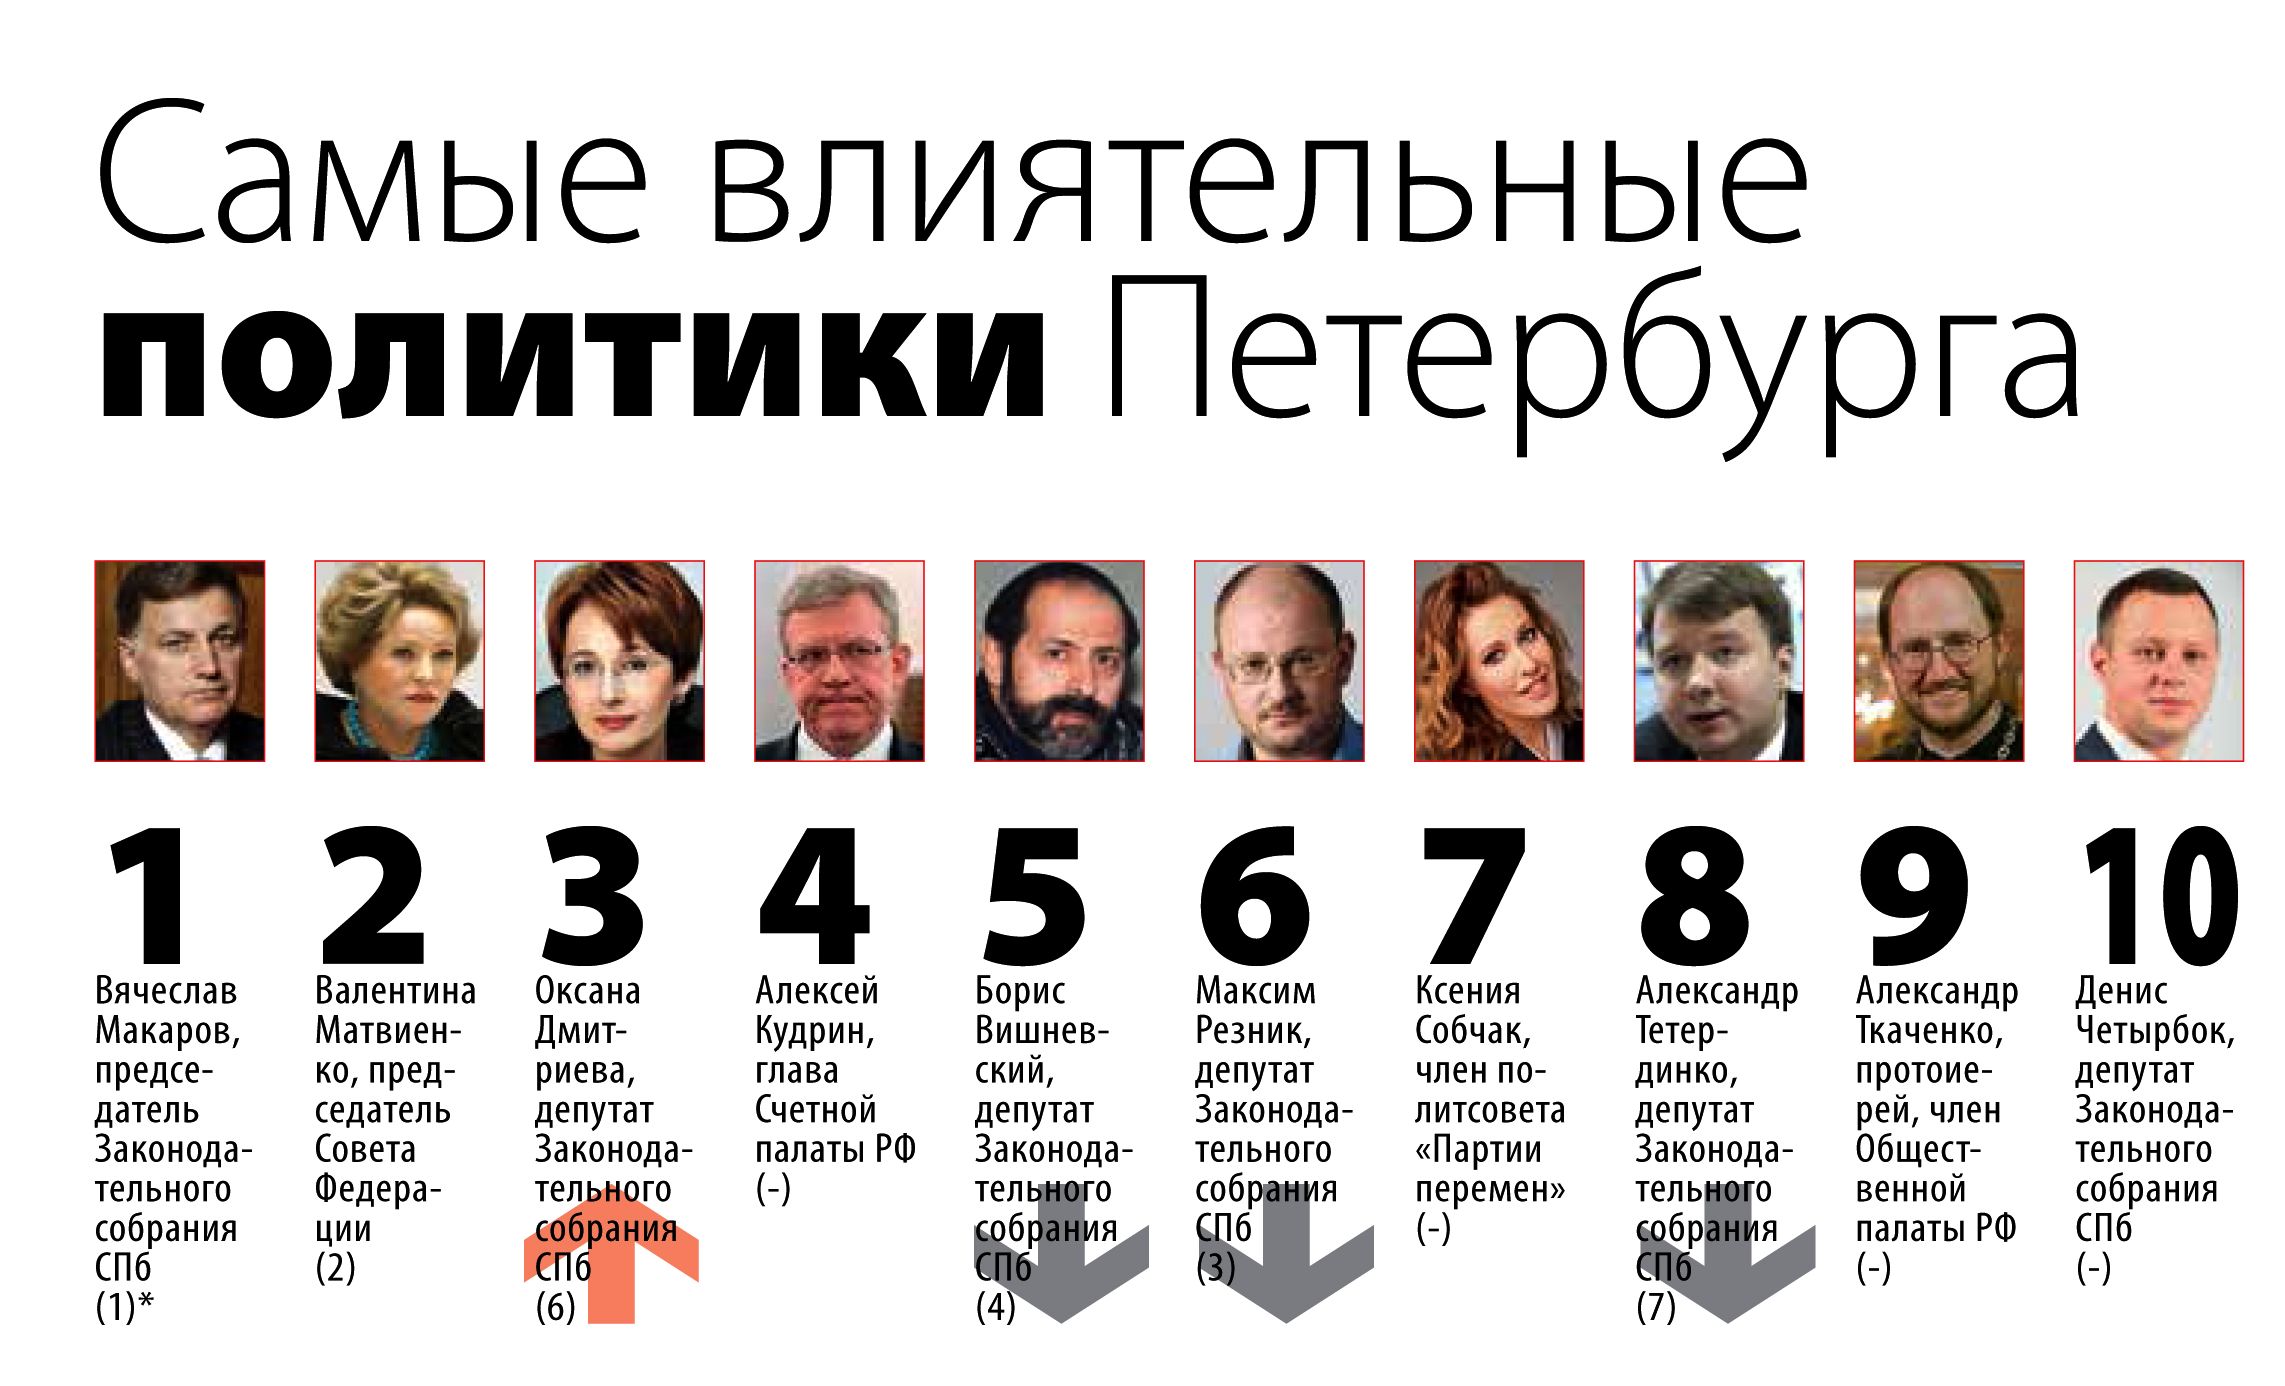 Кто был самым влиятельным человеком. Самый влиятельный человек в мире список. Список самых влиятельных людей. Фото влиятельных людей. Самые влиятельные политики России.